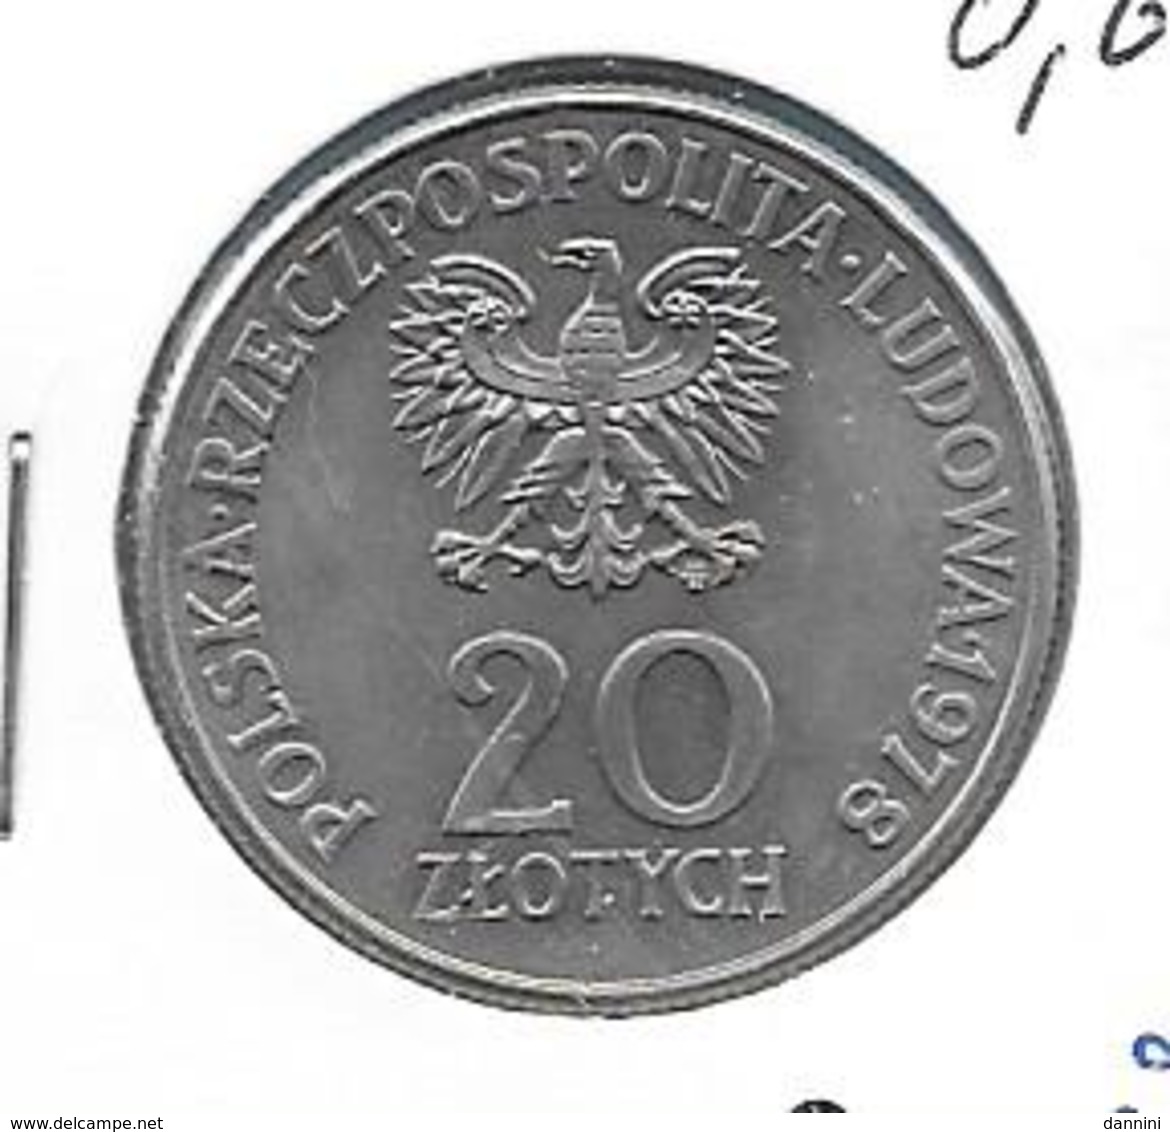 Polen 20 Zloty 1978 - KM 97 - Polen